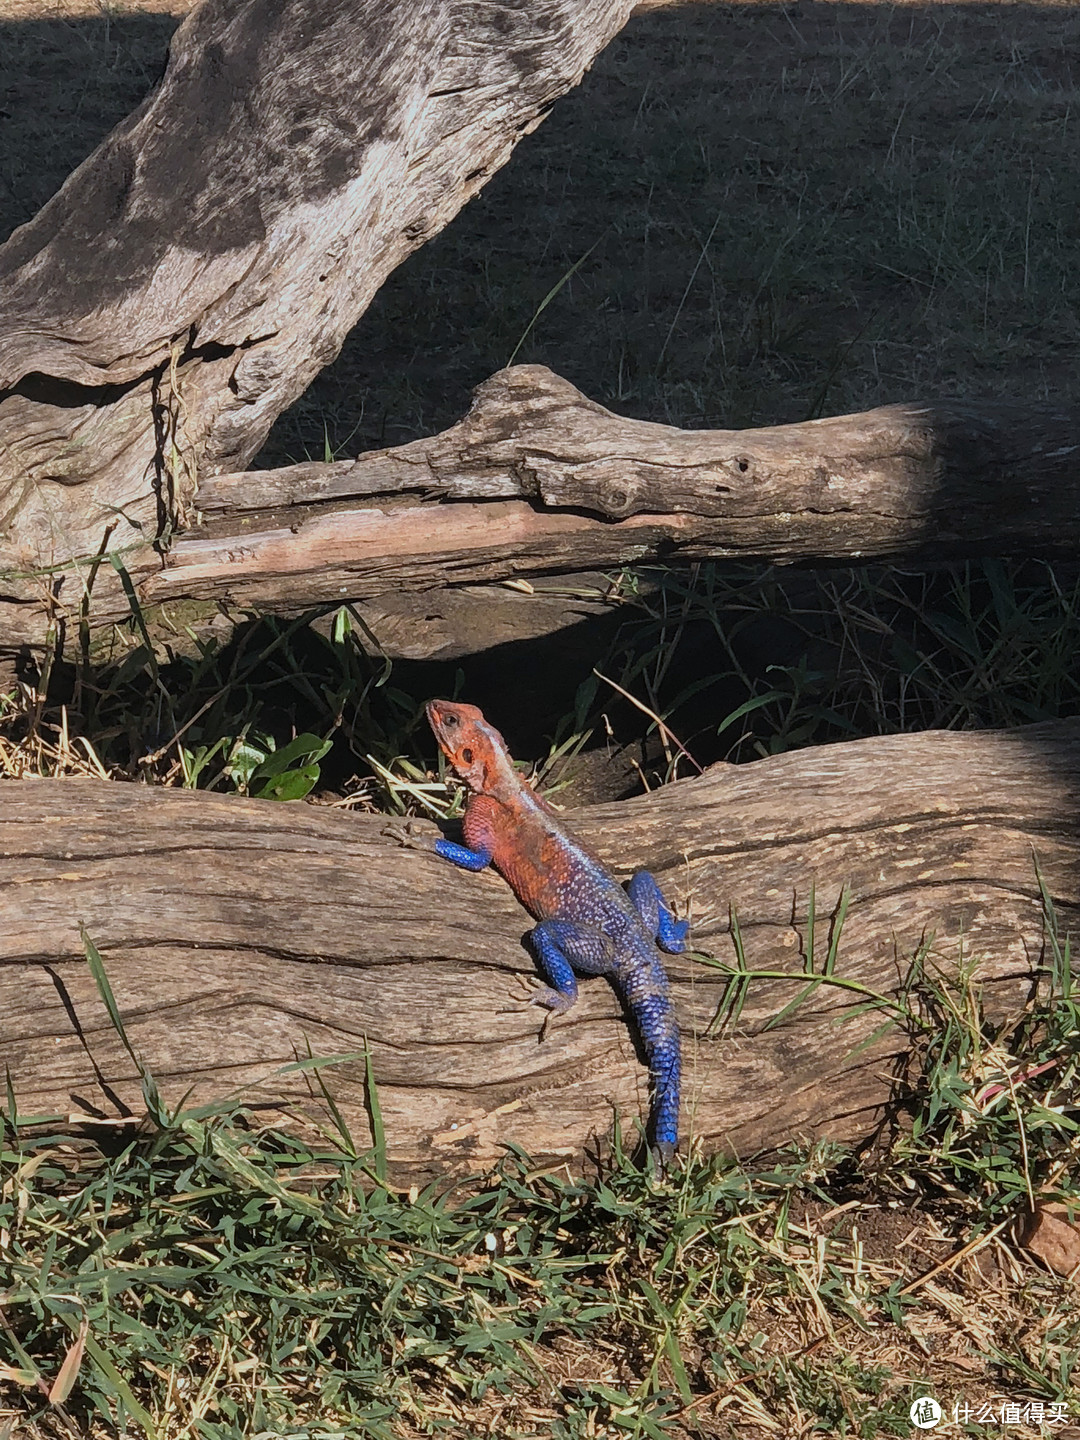 彩虹飞蜥，2018年10月4日拍摄于肯尼亚马赛马拉国家保护区门口